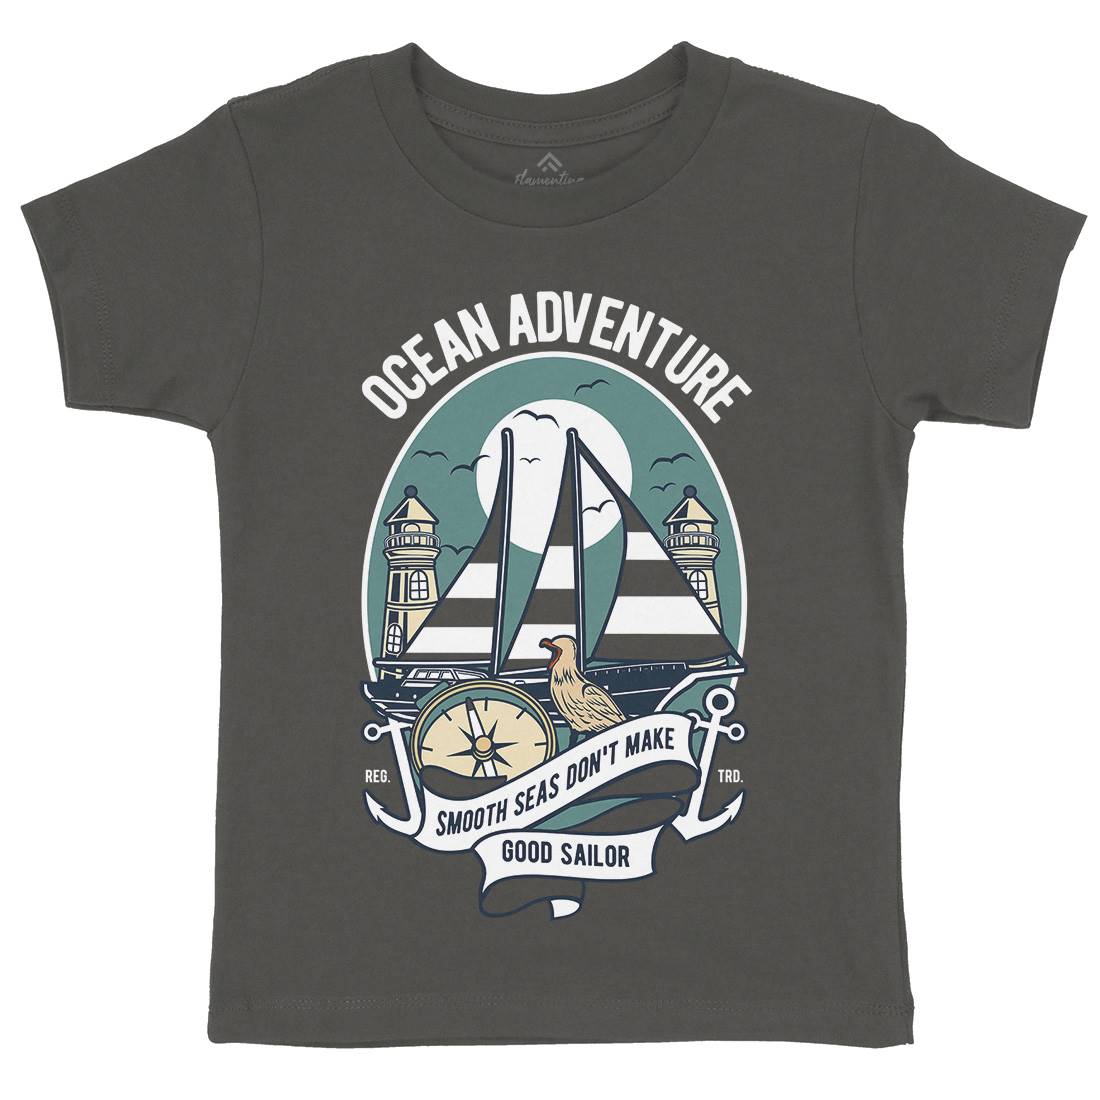 Ocean Adventure Kids Crew Neck T-Shirt Navy D560